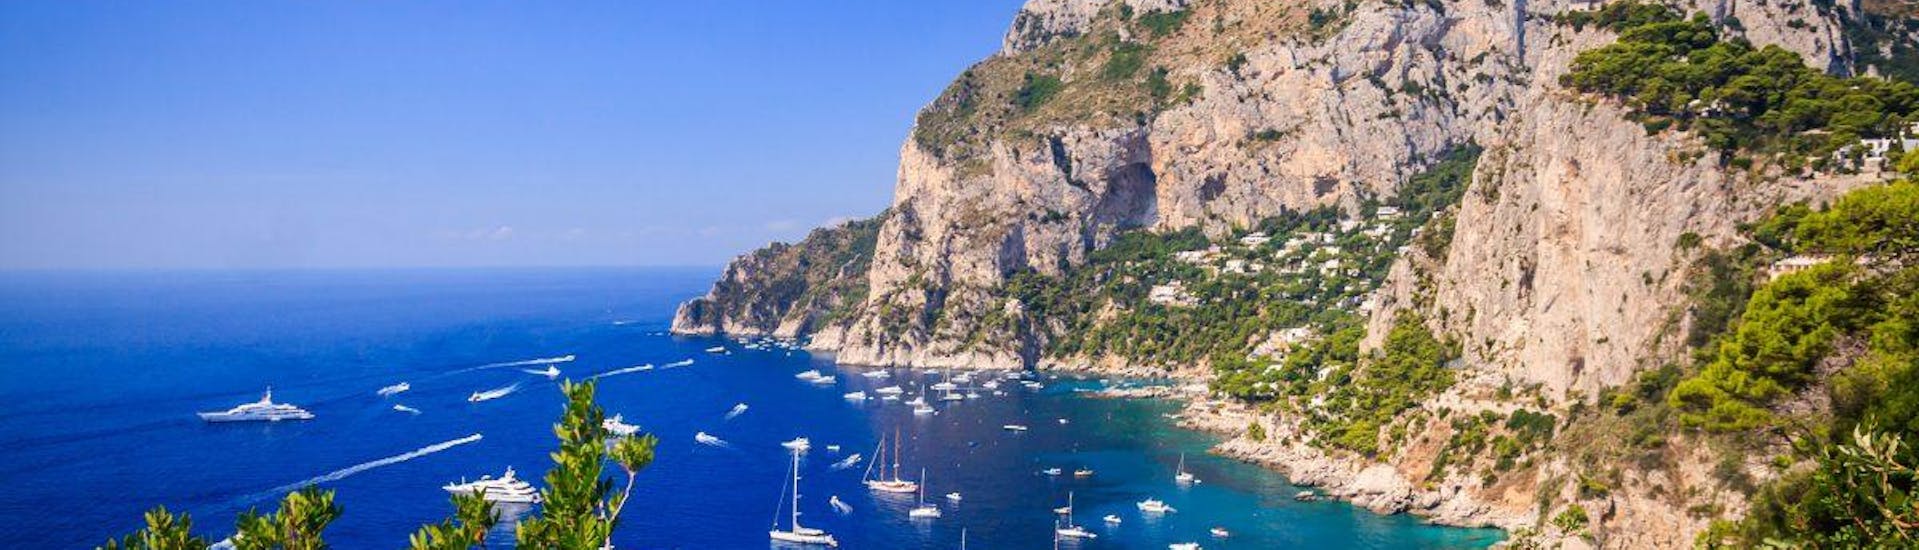 Bootstour von Torre del Greco und Ercolano nach Capri.